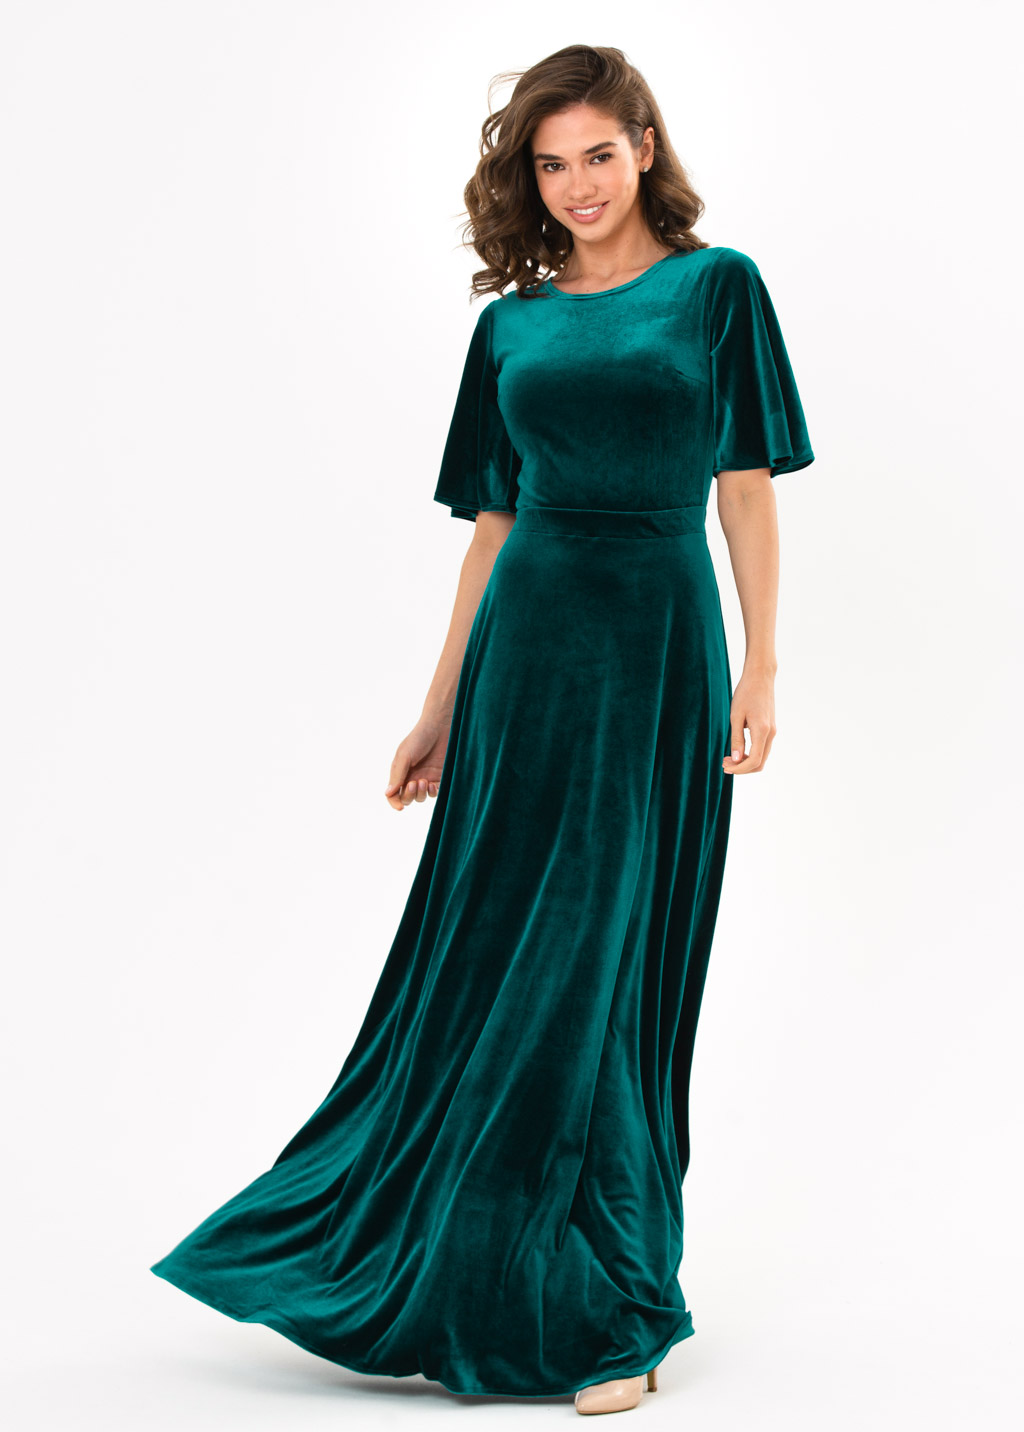 Teal green velvet long dress